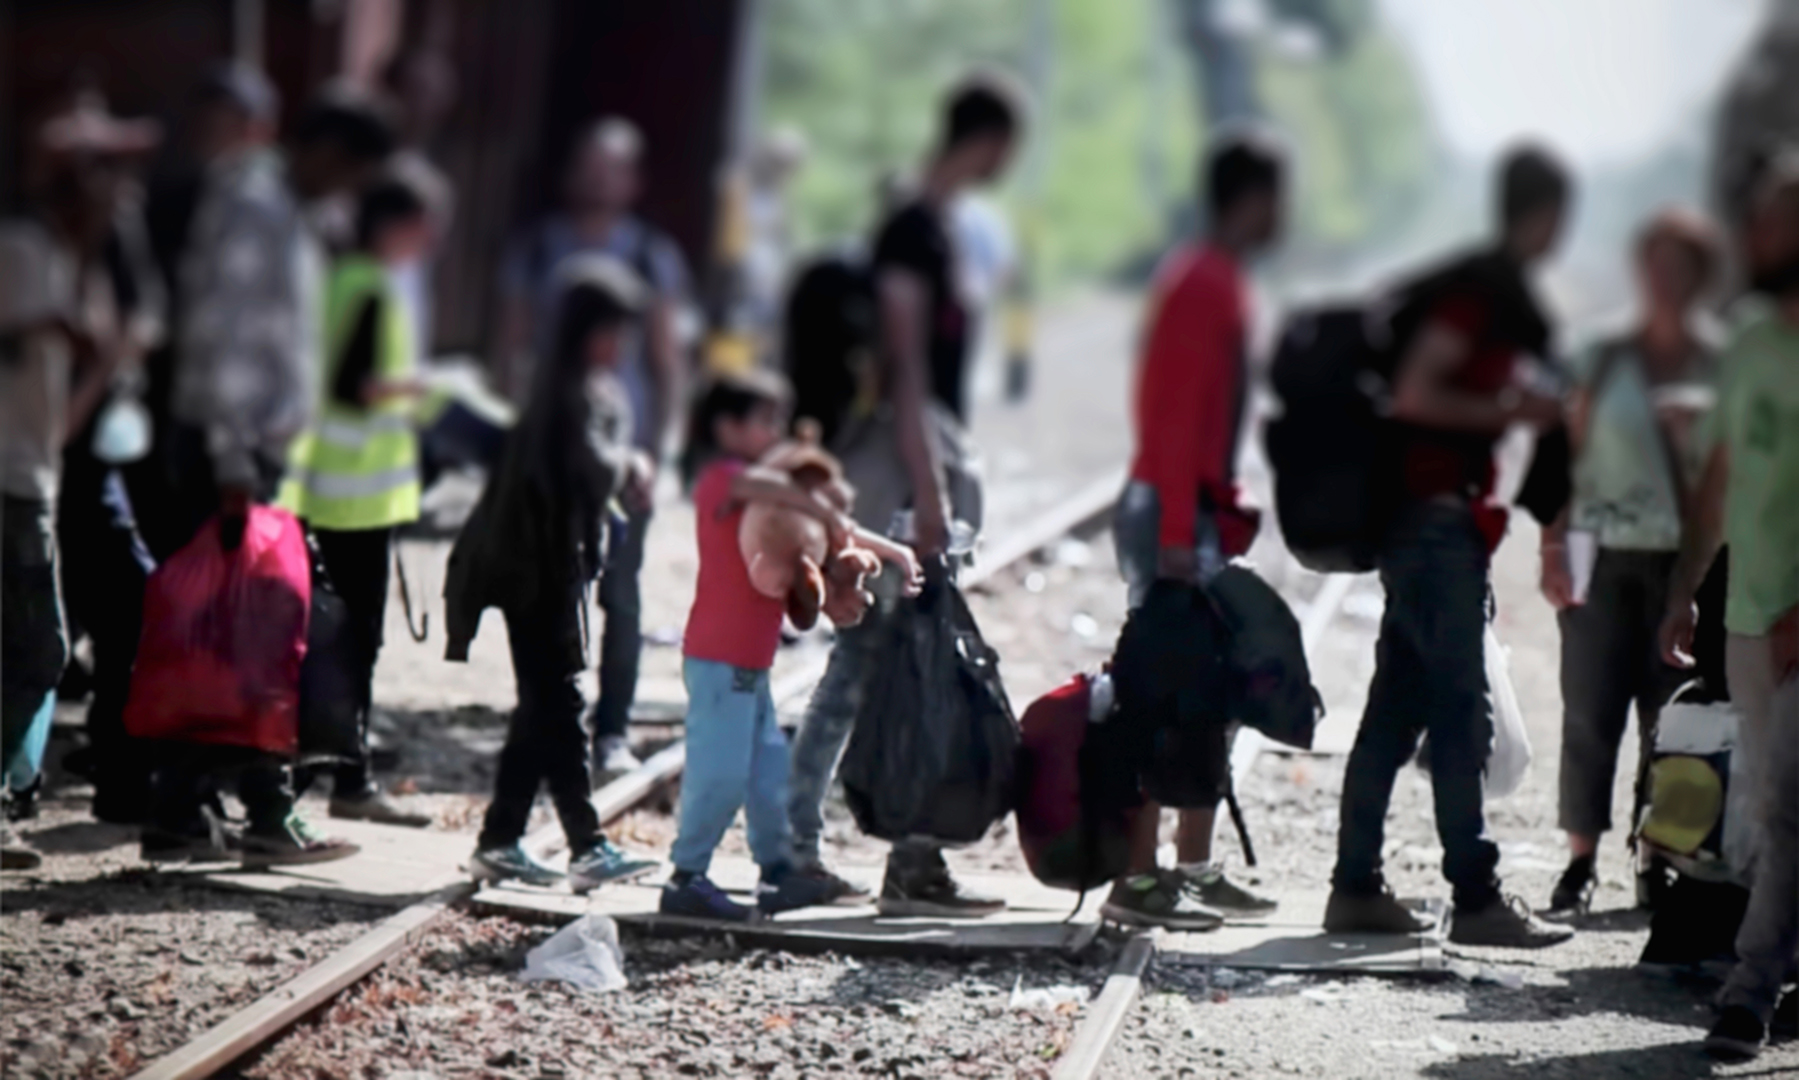 México, EE.UU. y países de Centroamérica crean “Grupo de Acción Inmediata” contra el tráfico de migrantes2 min read